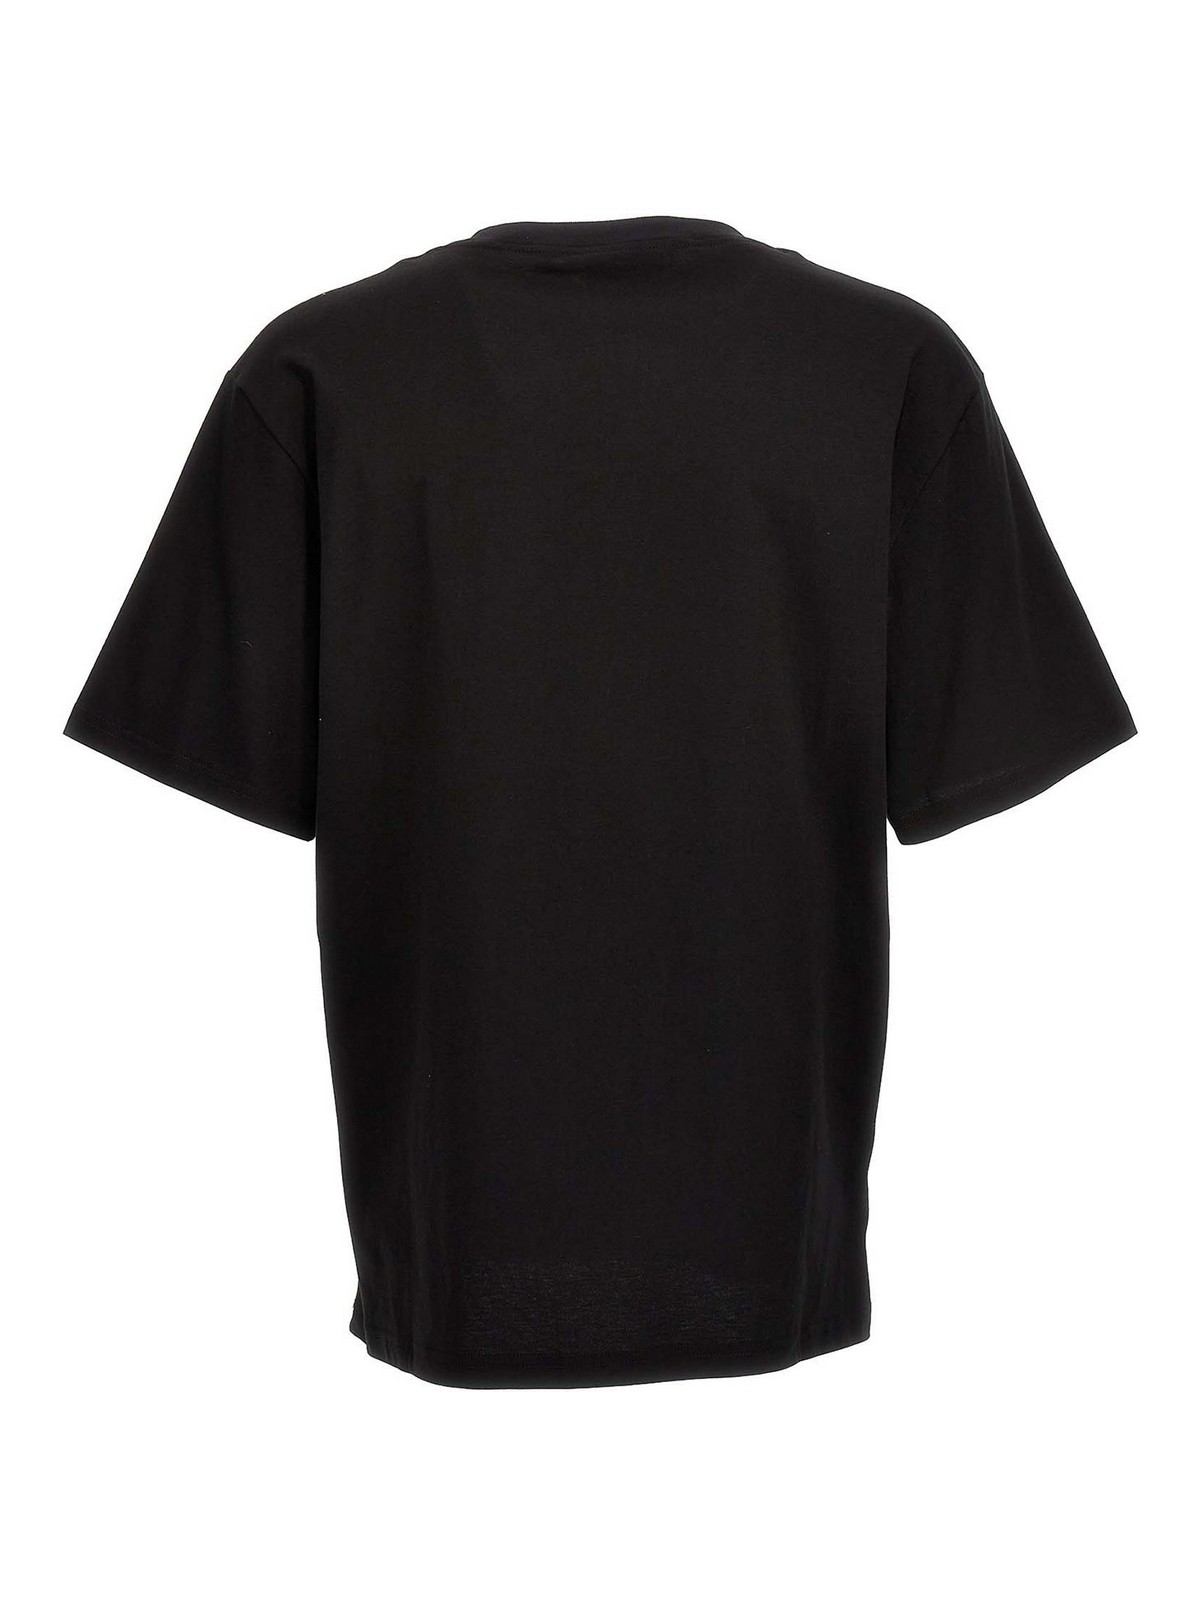 Shop Gcds Camiseta - Negro In Black